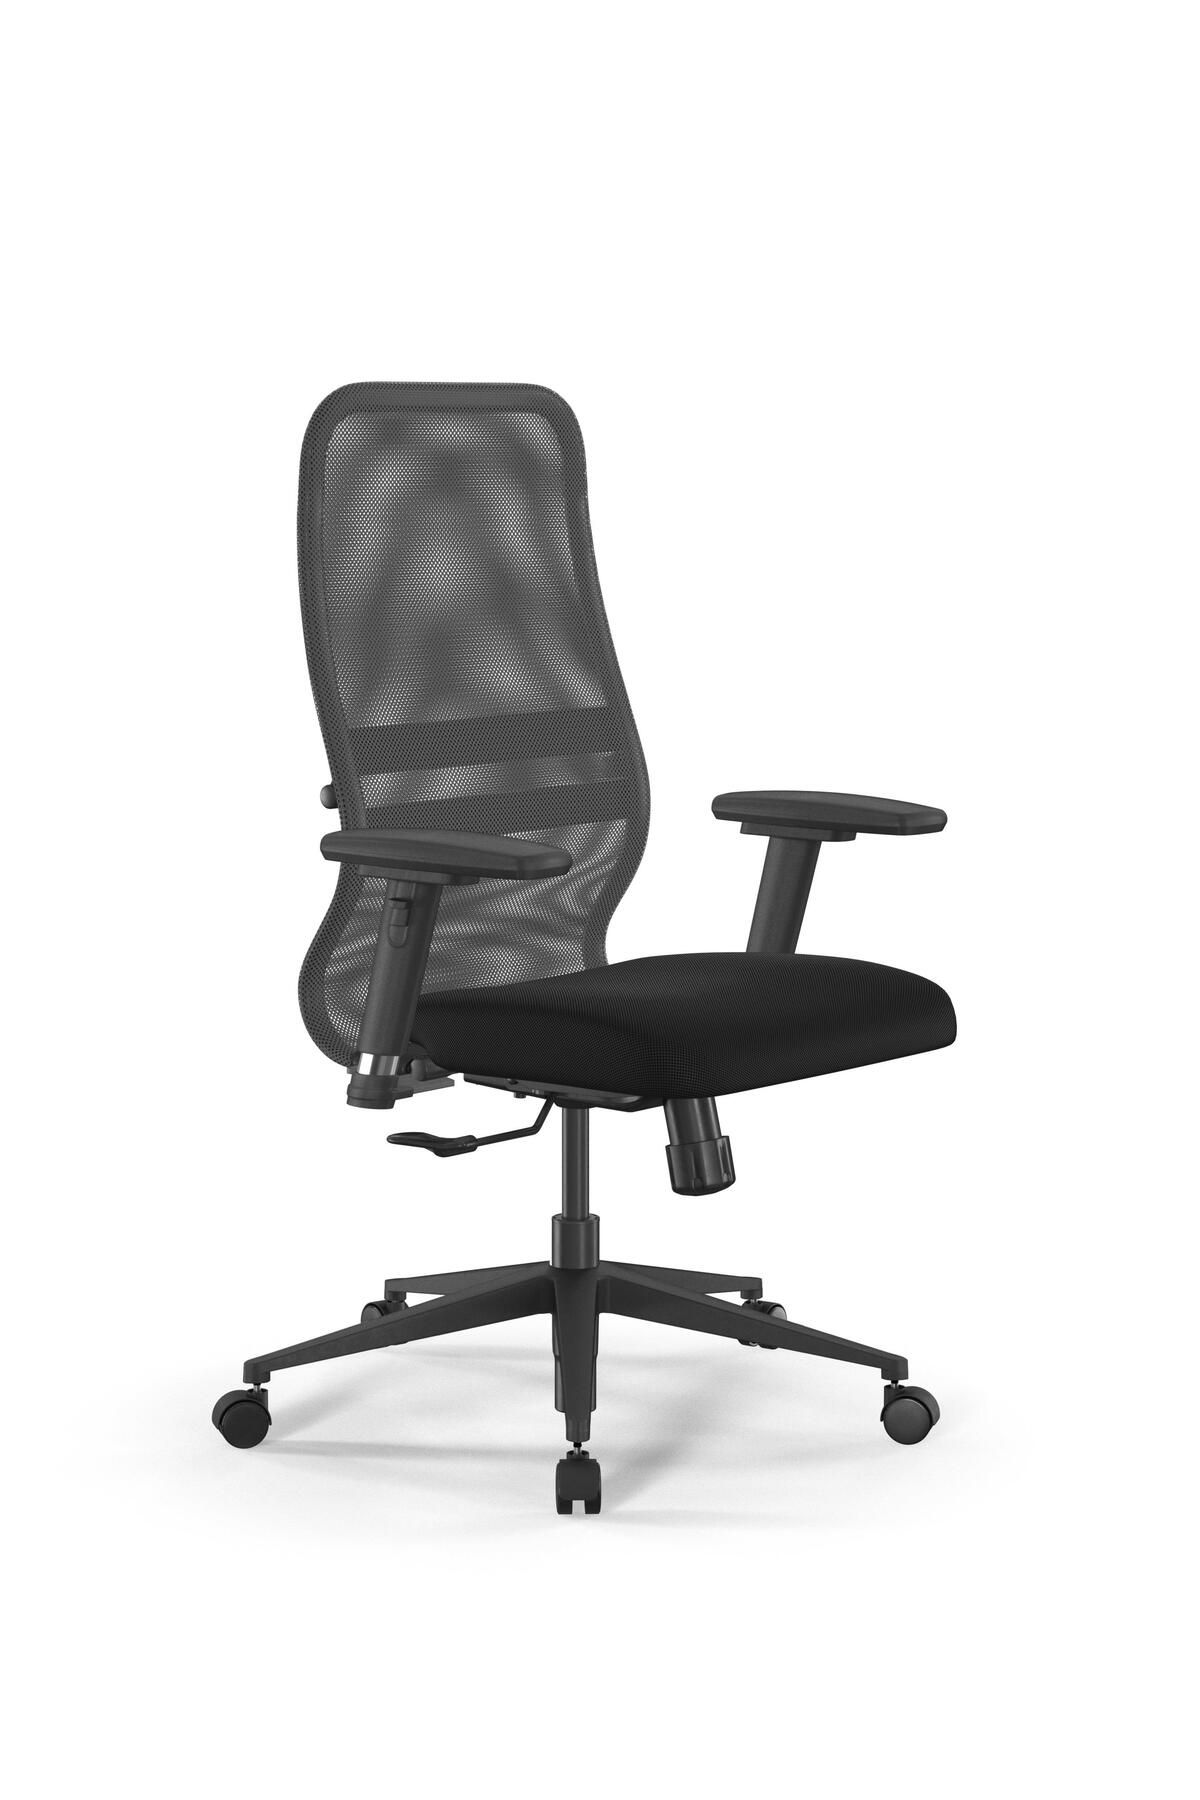 METTA Ergolife Fileli Ergonomik Ofis Koltuğu / Çalışma Sandalyesi Synchrosit 8 B2-8D – 3D / 1228541